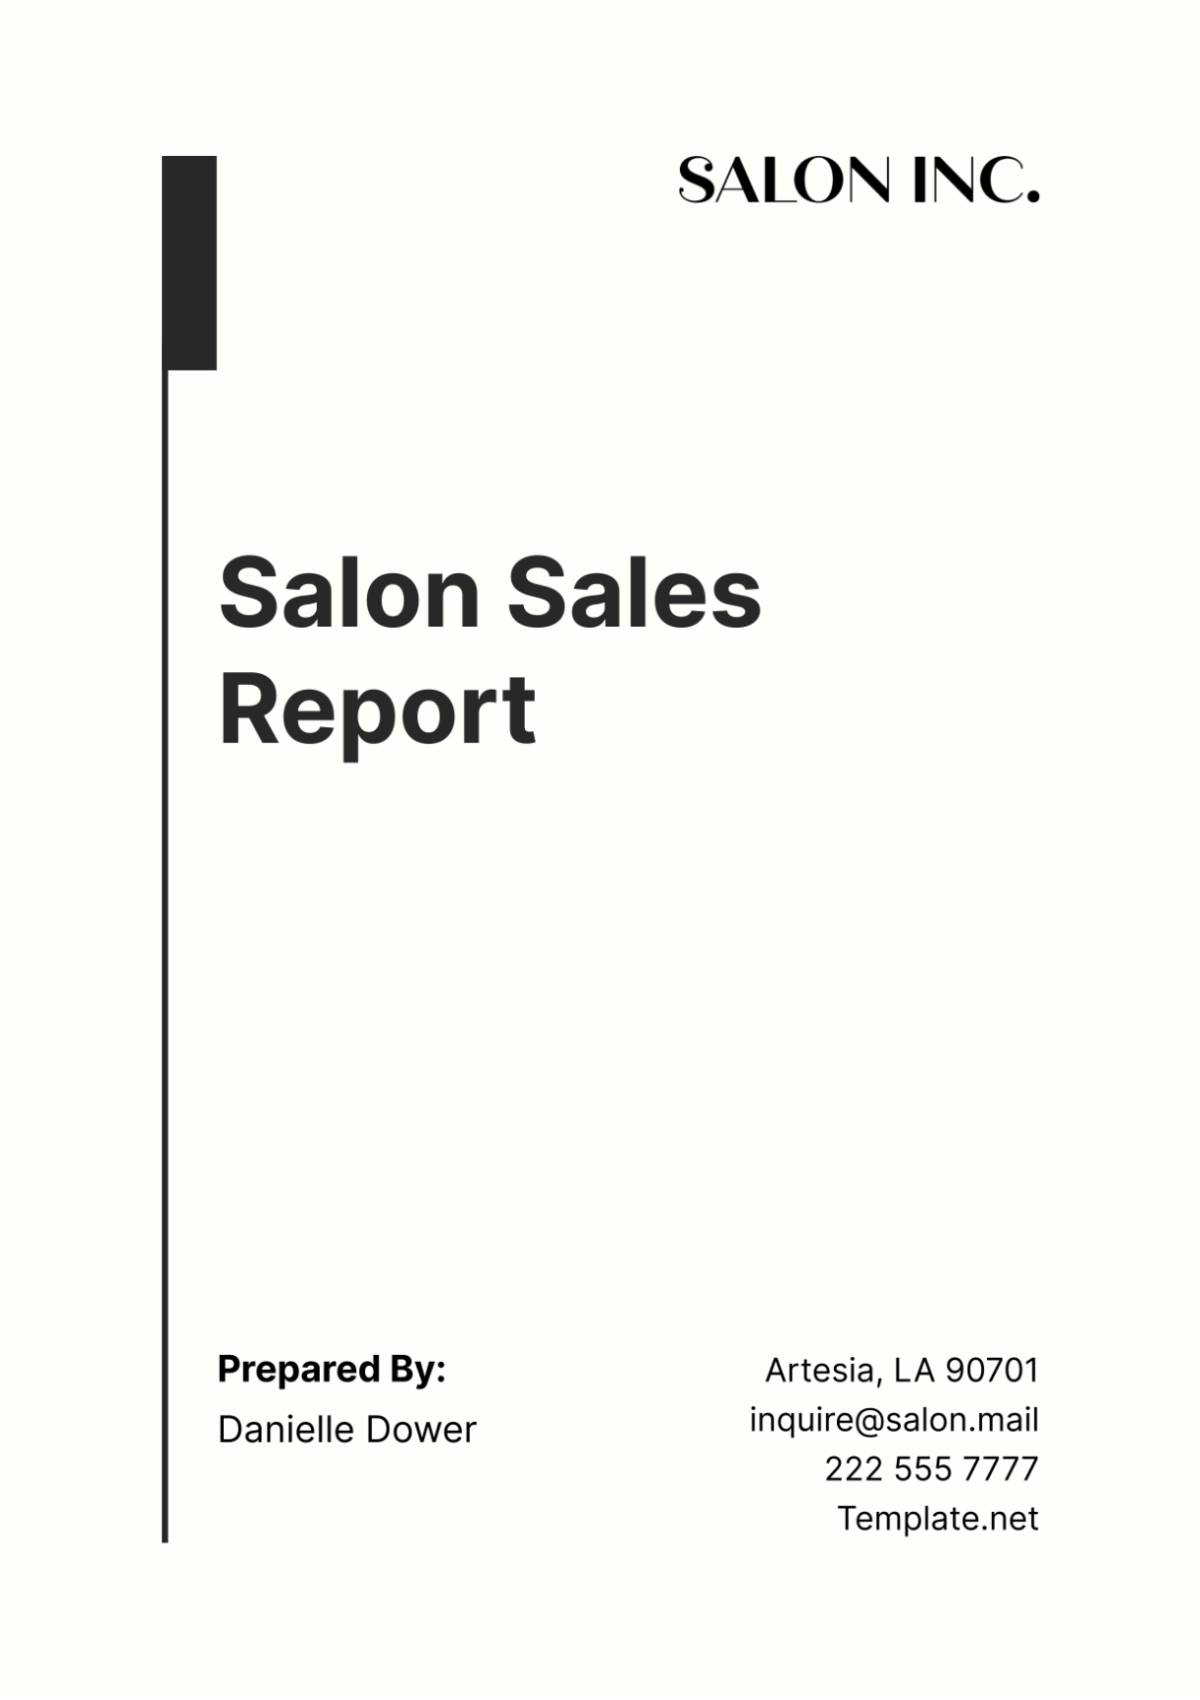 Salon Sales Report Template